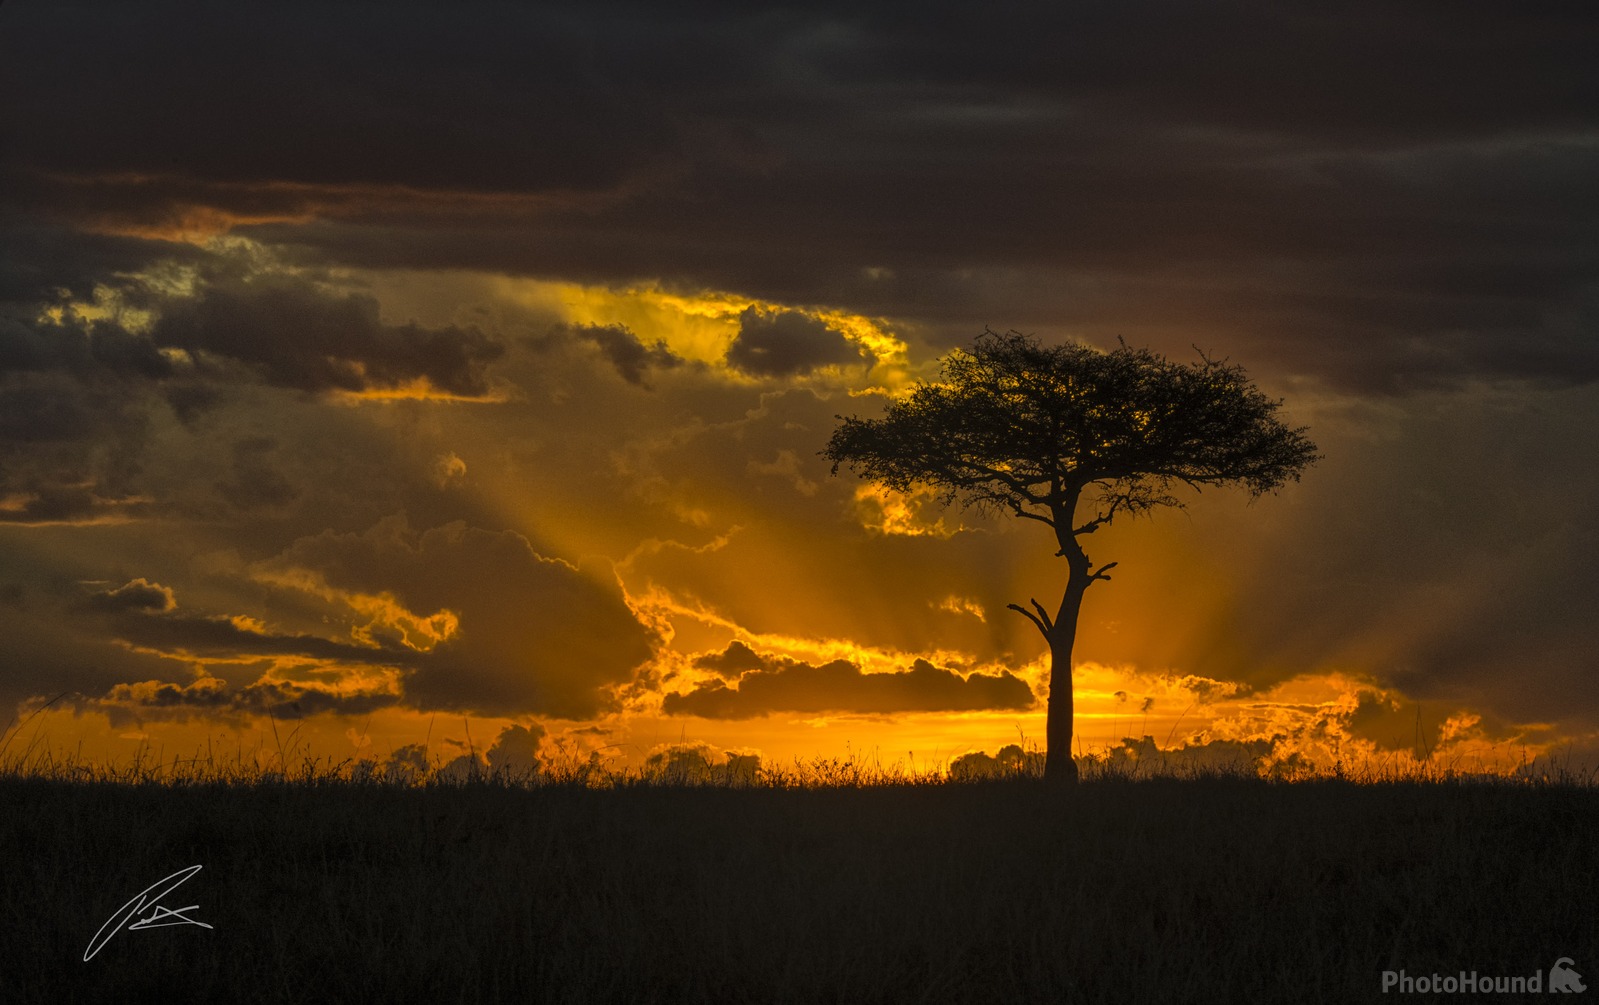 Image of Maasai Mara Game Reserve by Patrick Hulley